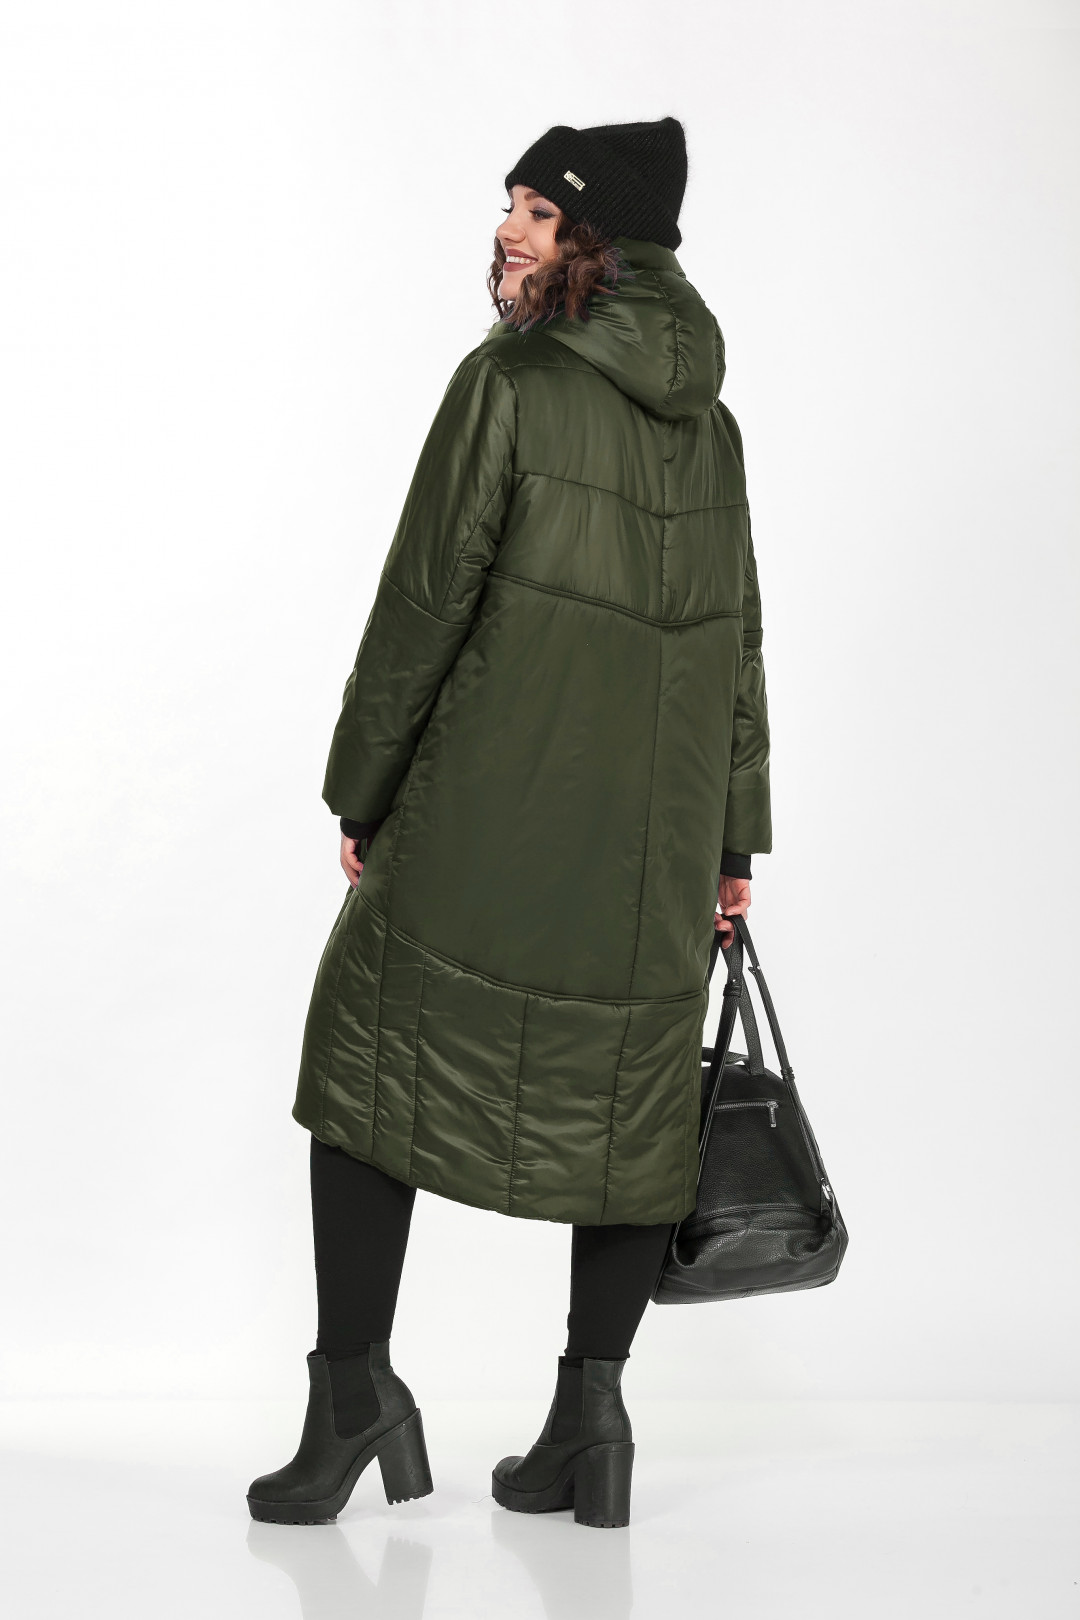 Пальто LadySecret 8280.1 оливково-зеленый